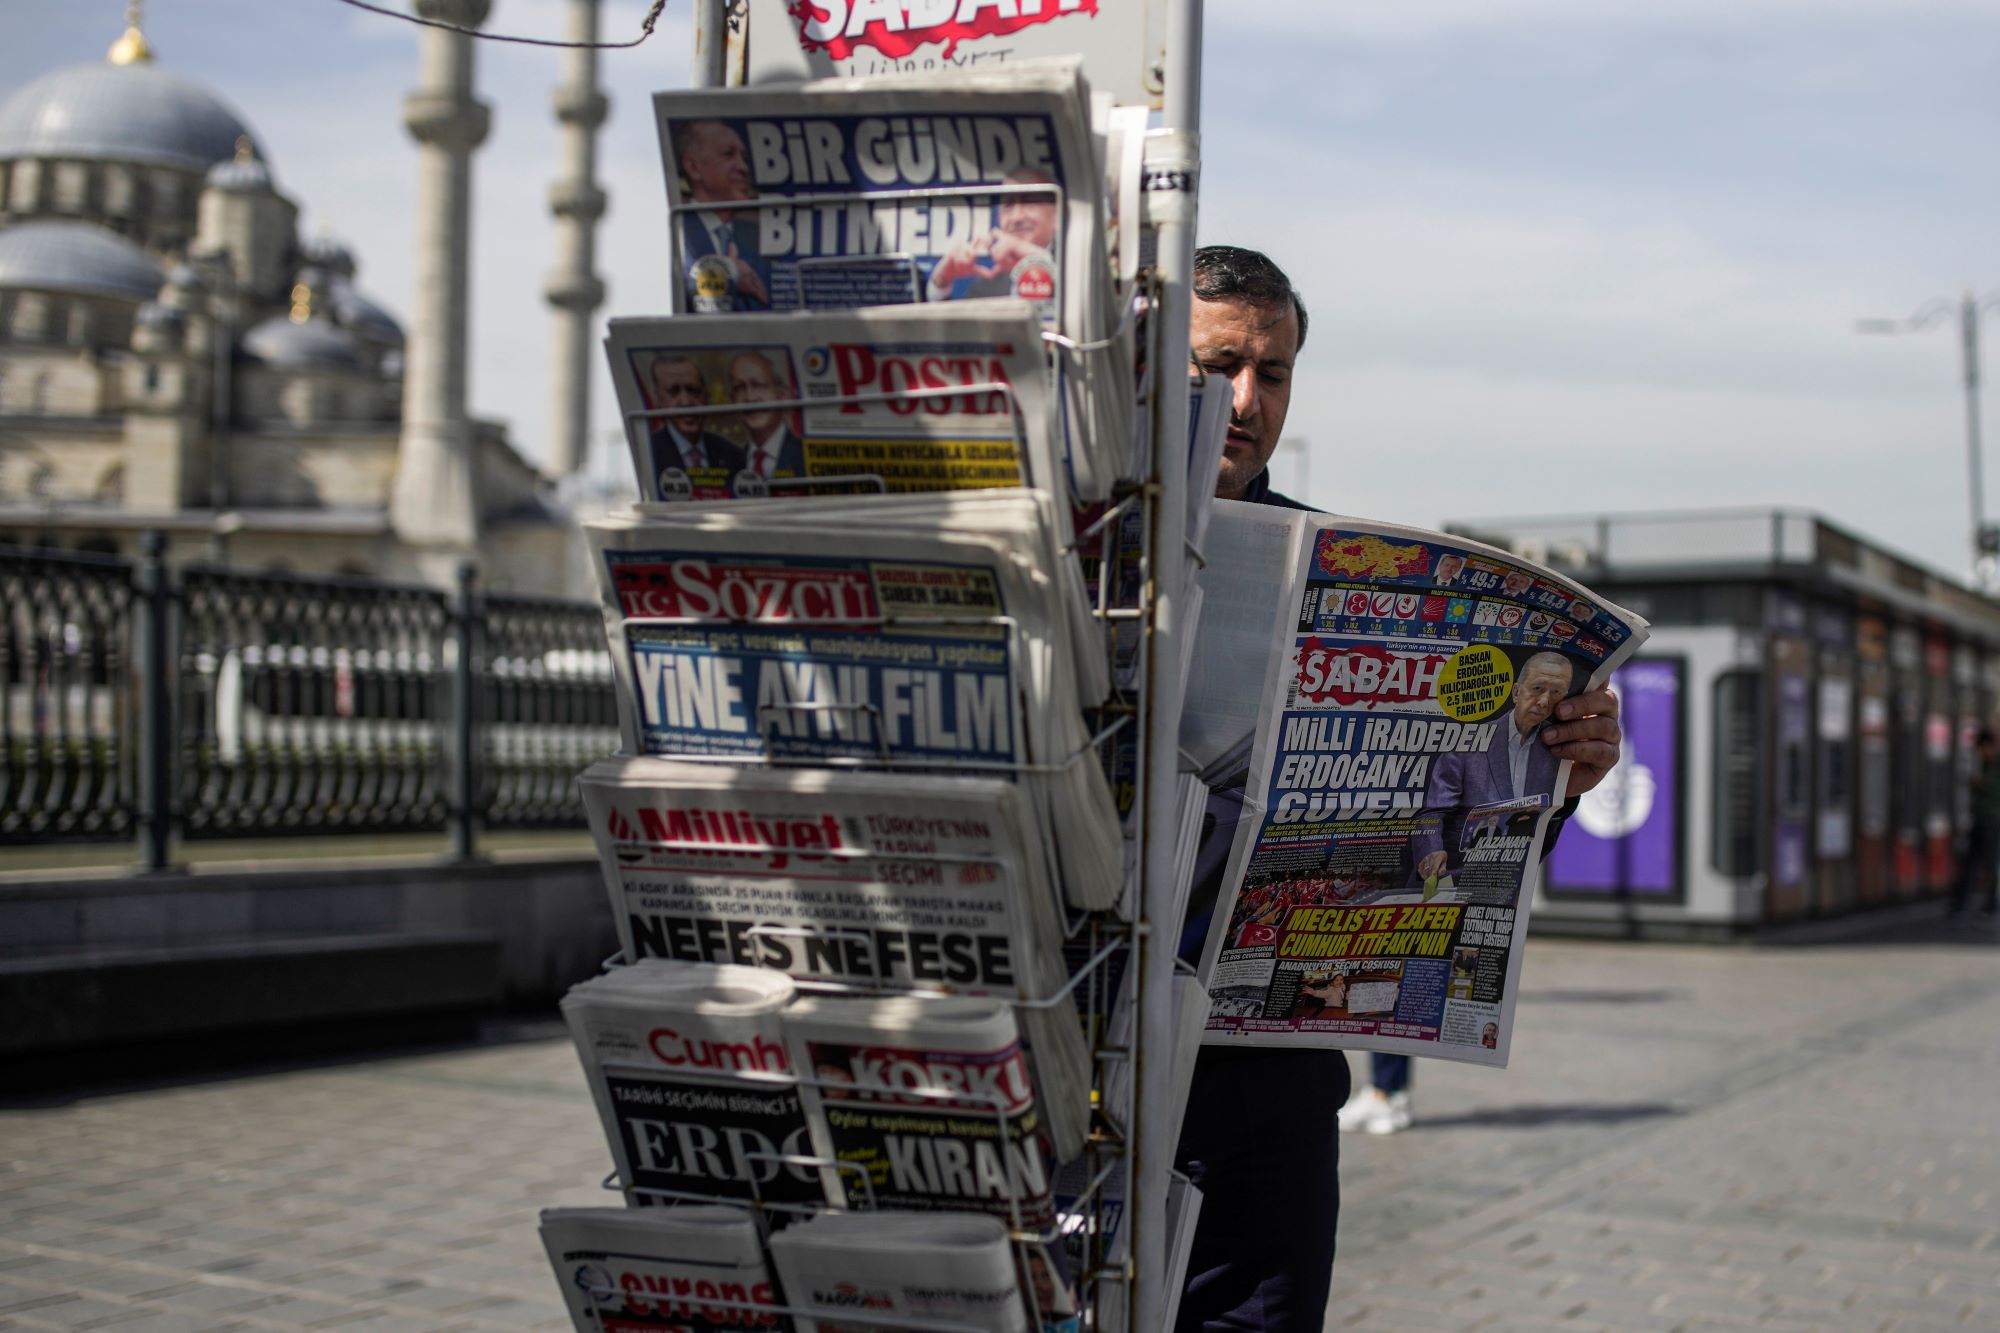 Κλείνει η έντυπη τουρκική εφημερίδα Μιλιέτ – Συνεχίζει σε ψηφιακή μορφή